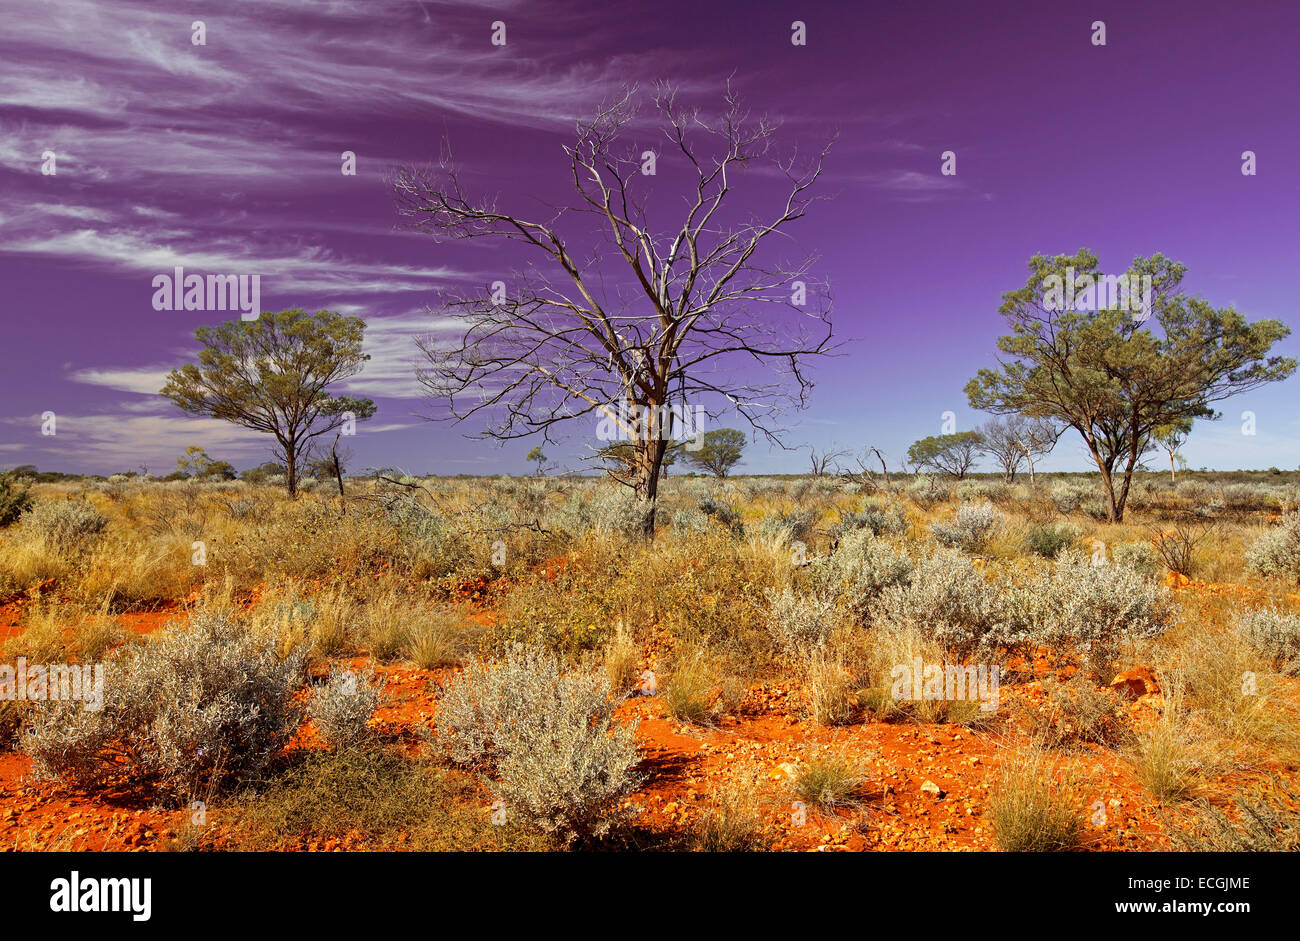 Outback australiano paesaggio con vaste pianure rosso all orizzonte, cespugli bassi e albero morto contro il cielo viola striate con il cloud. Foto Stock